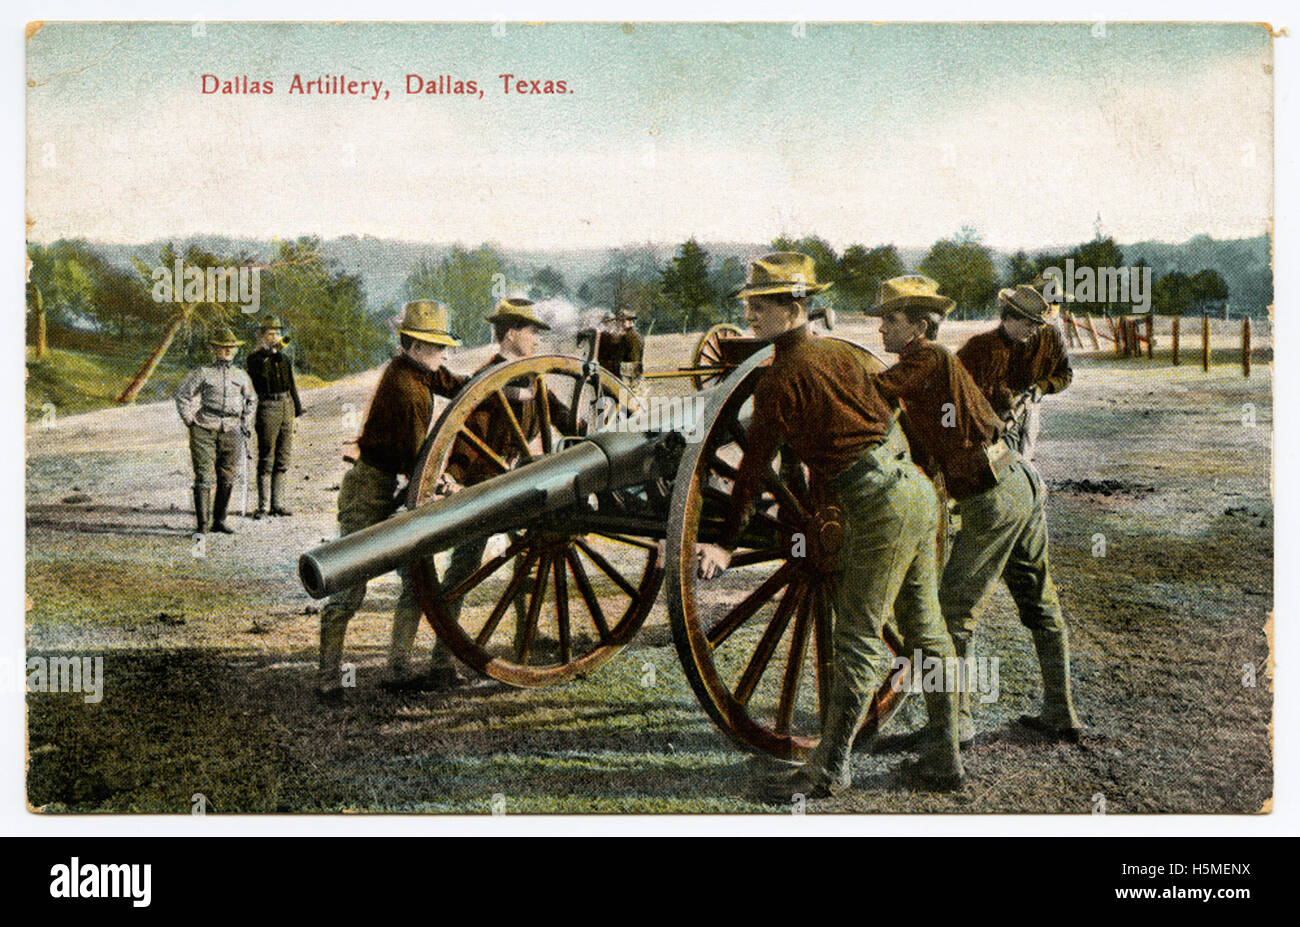 La Artillería de Dallas, Dallas, Texas Foto de stock